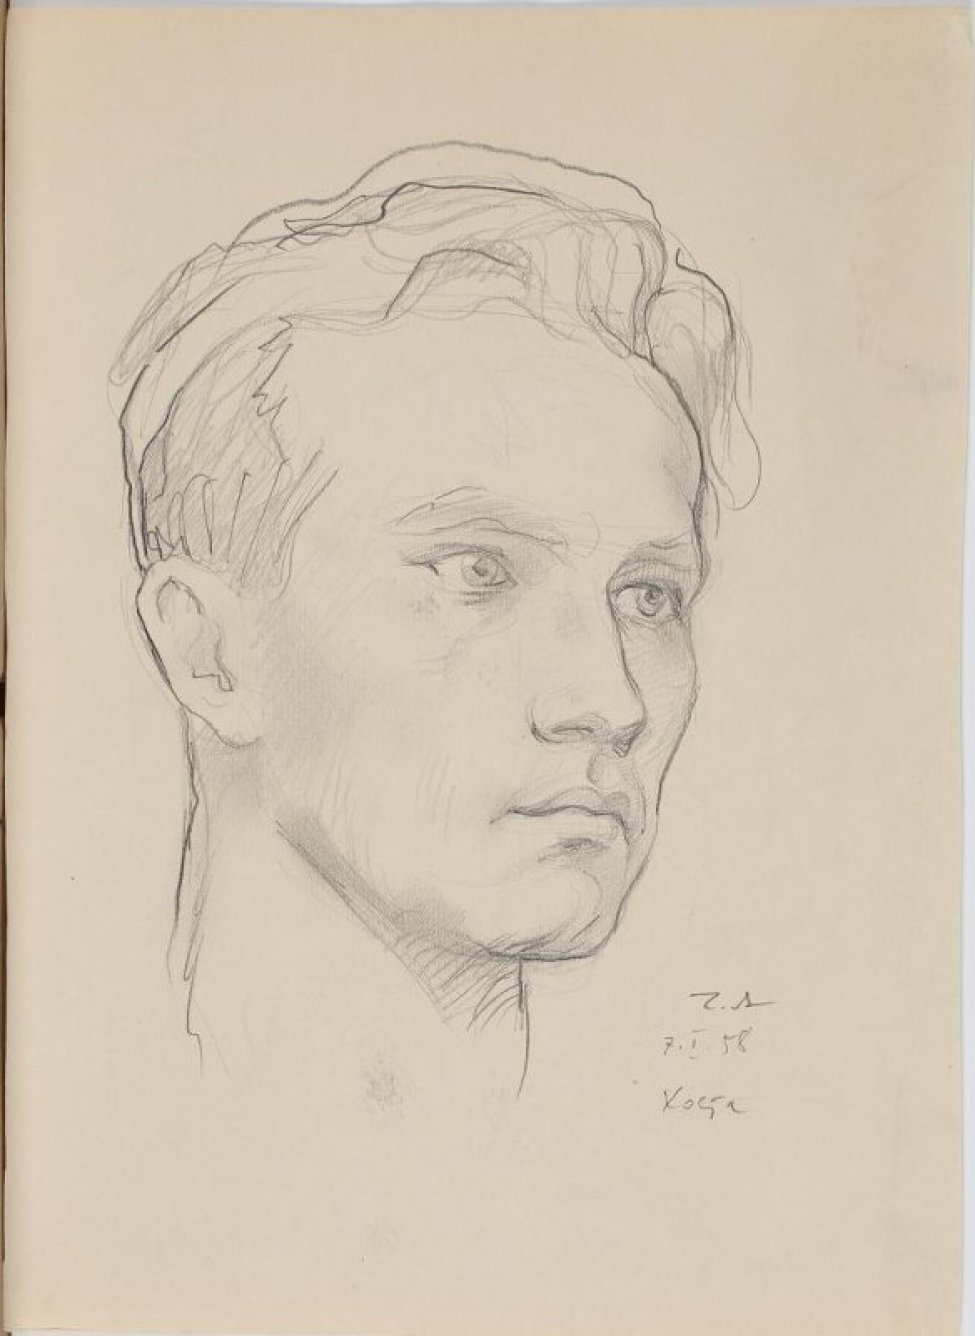 Изображена в 3/4 повороте вправо голова молодого человека с волнистыми волосами, открывающими высокий лоб, губы плотно сжаты.